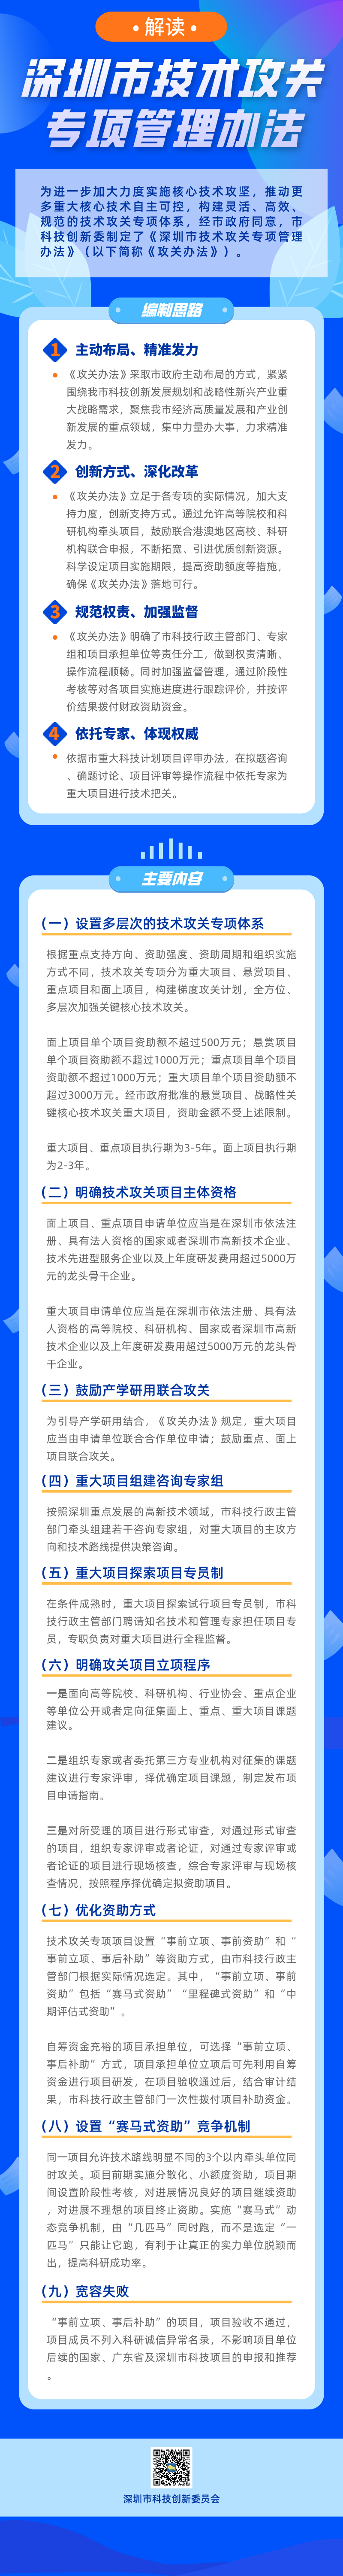 关于开展2019年深圳市创业资助项目的申报工作的通知 - 第3张